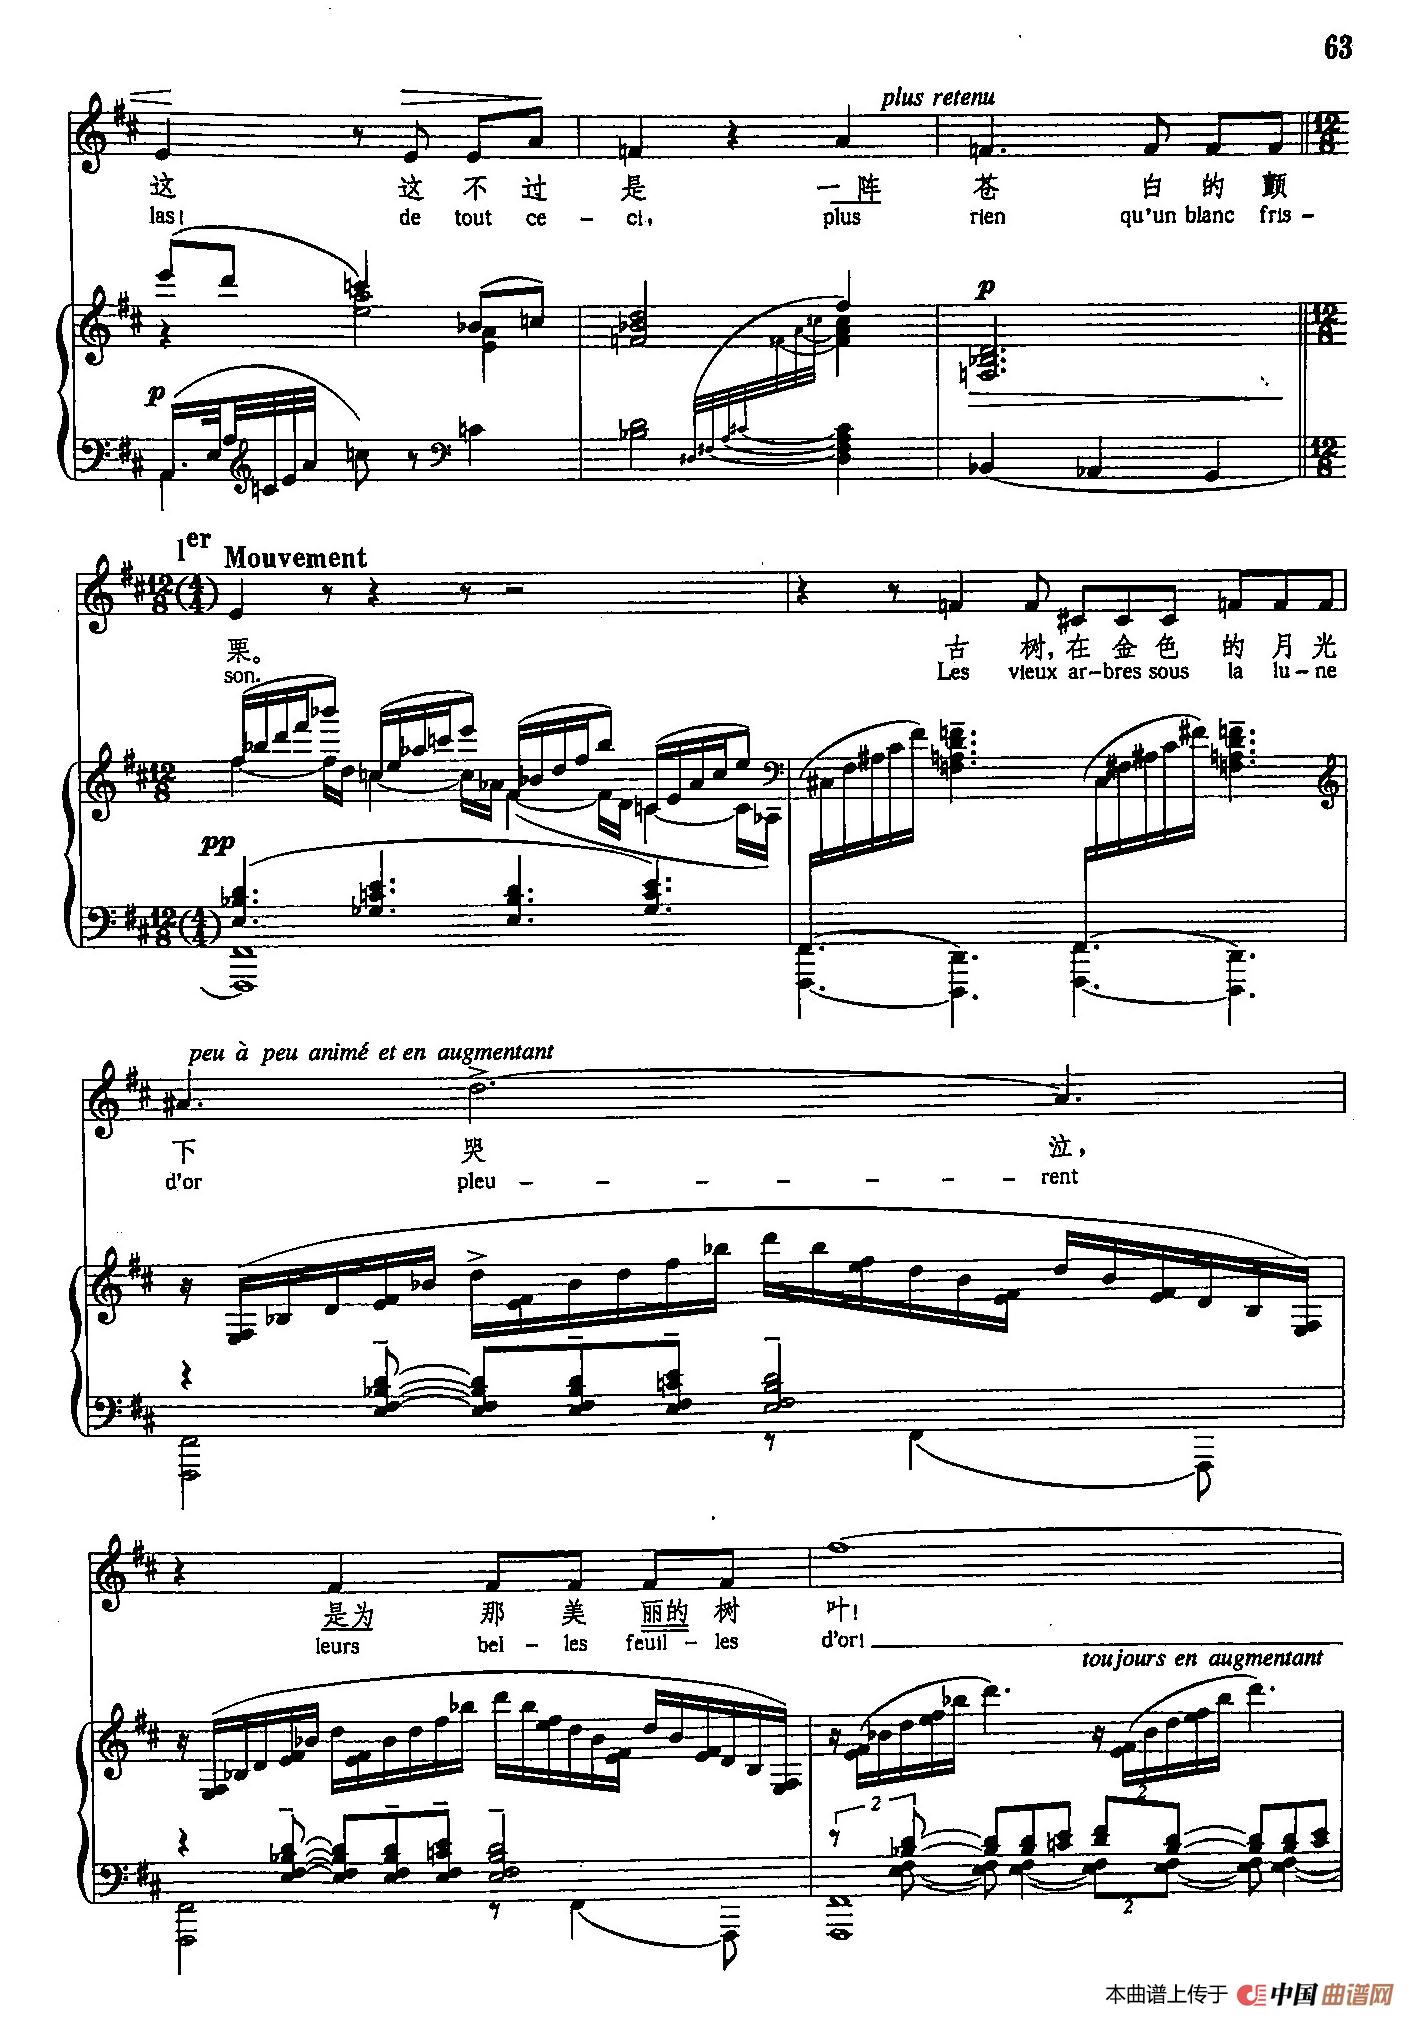 声乐教学曲库5-12梦（正谱）(1)_原文件名：声乐教学曲库5-12梦（正谱）5.jpg